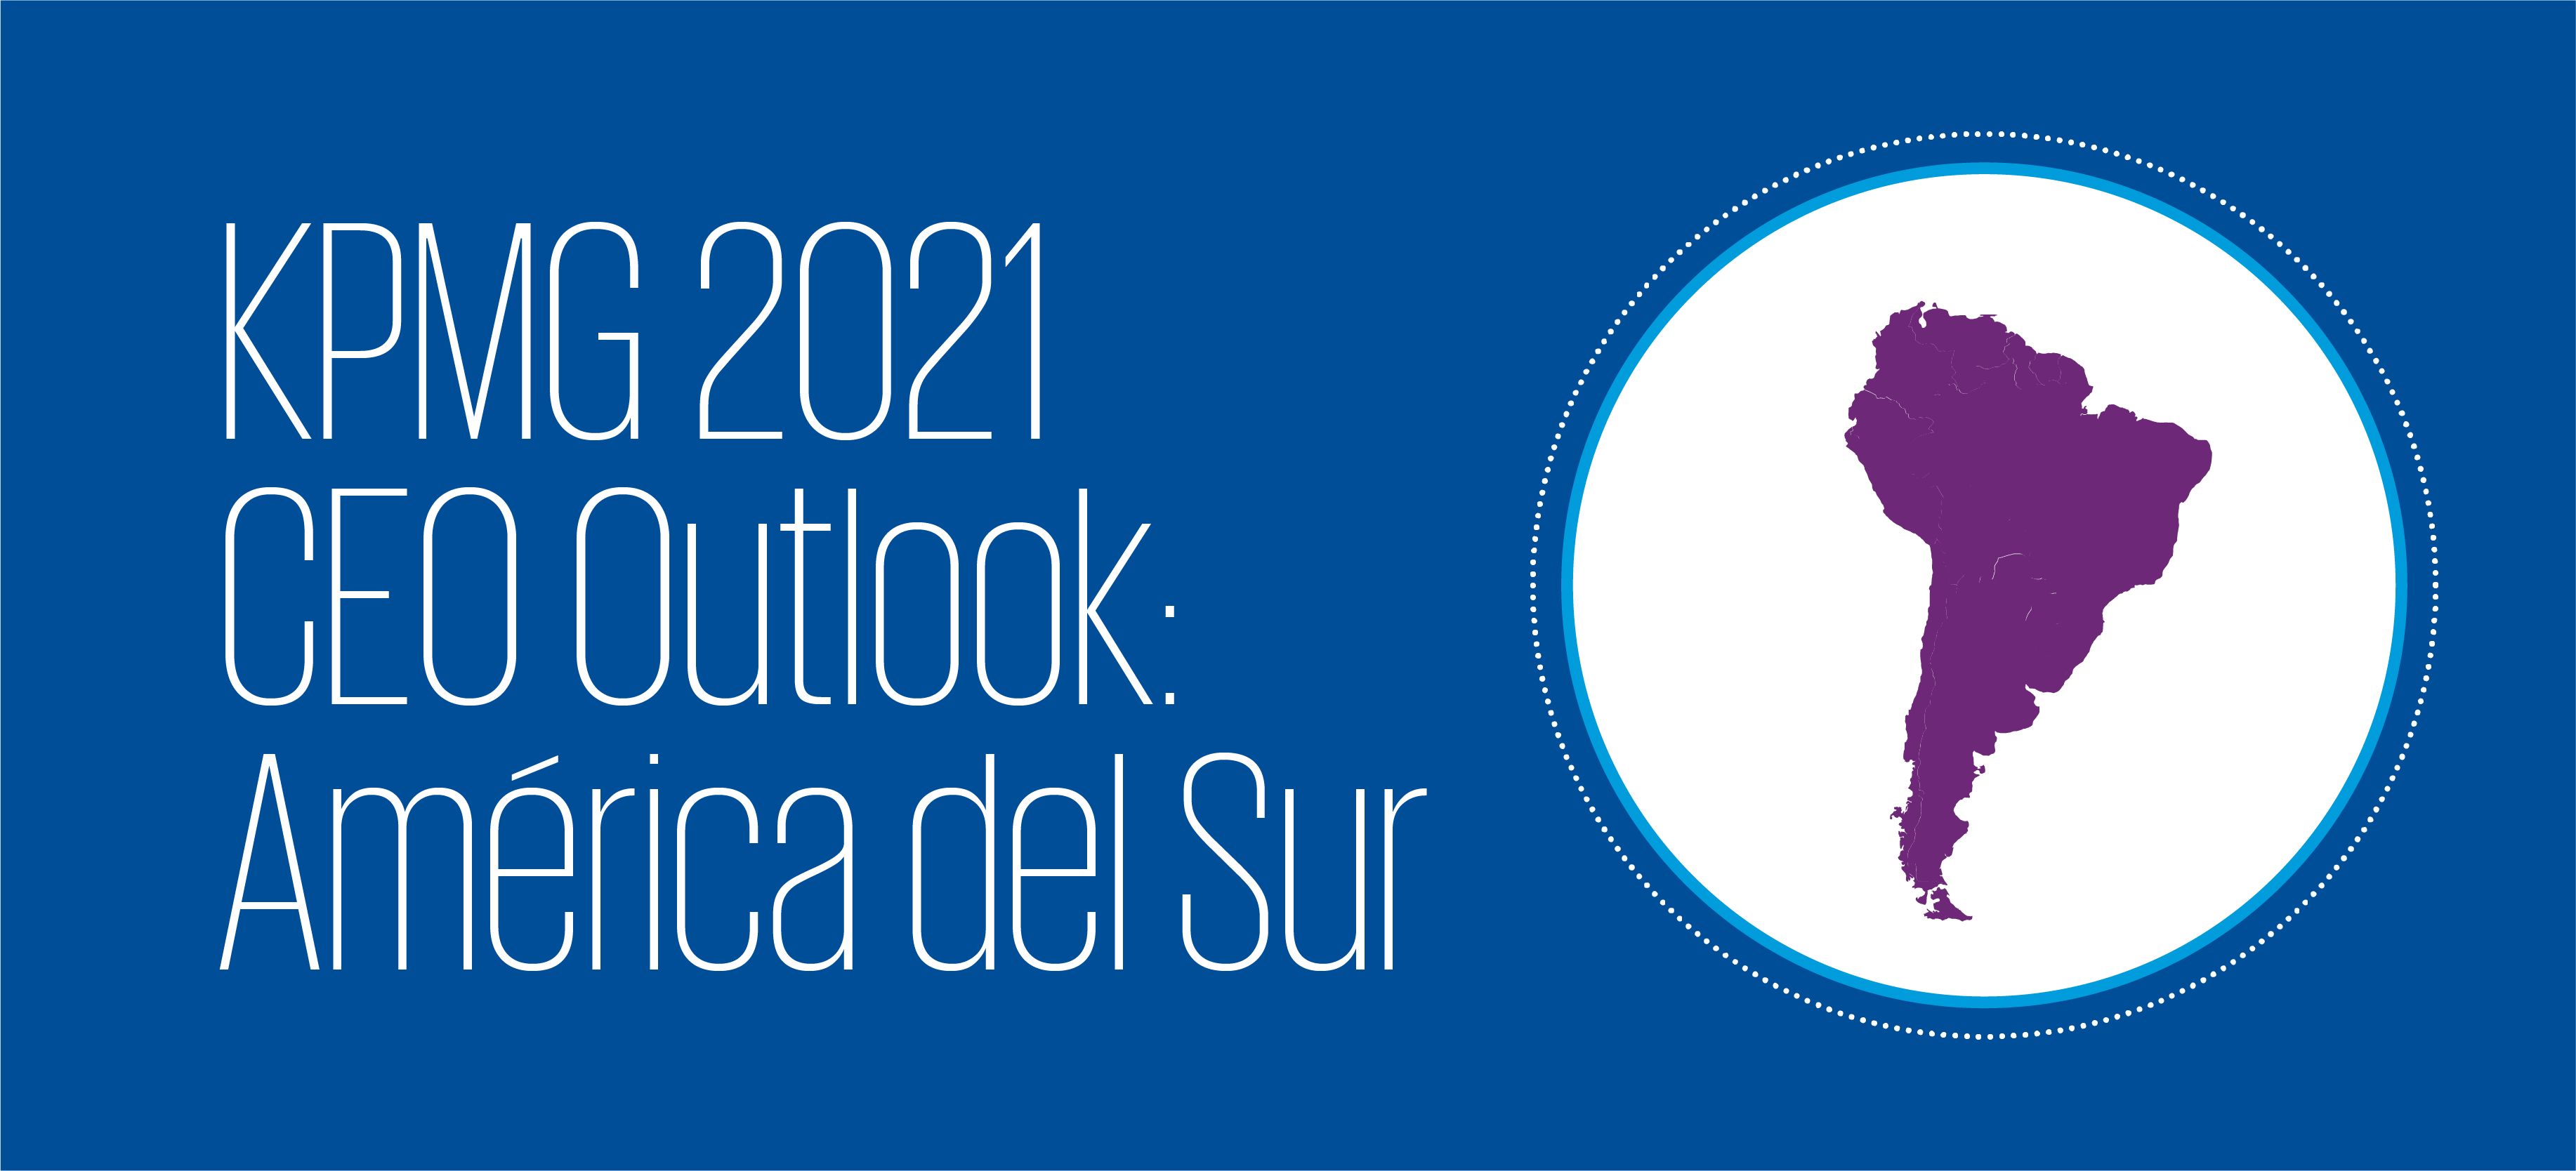 KPMG CEO Outlook 2021: América del Sur